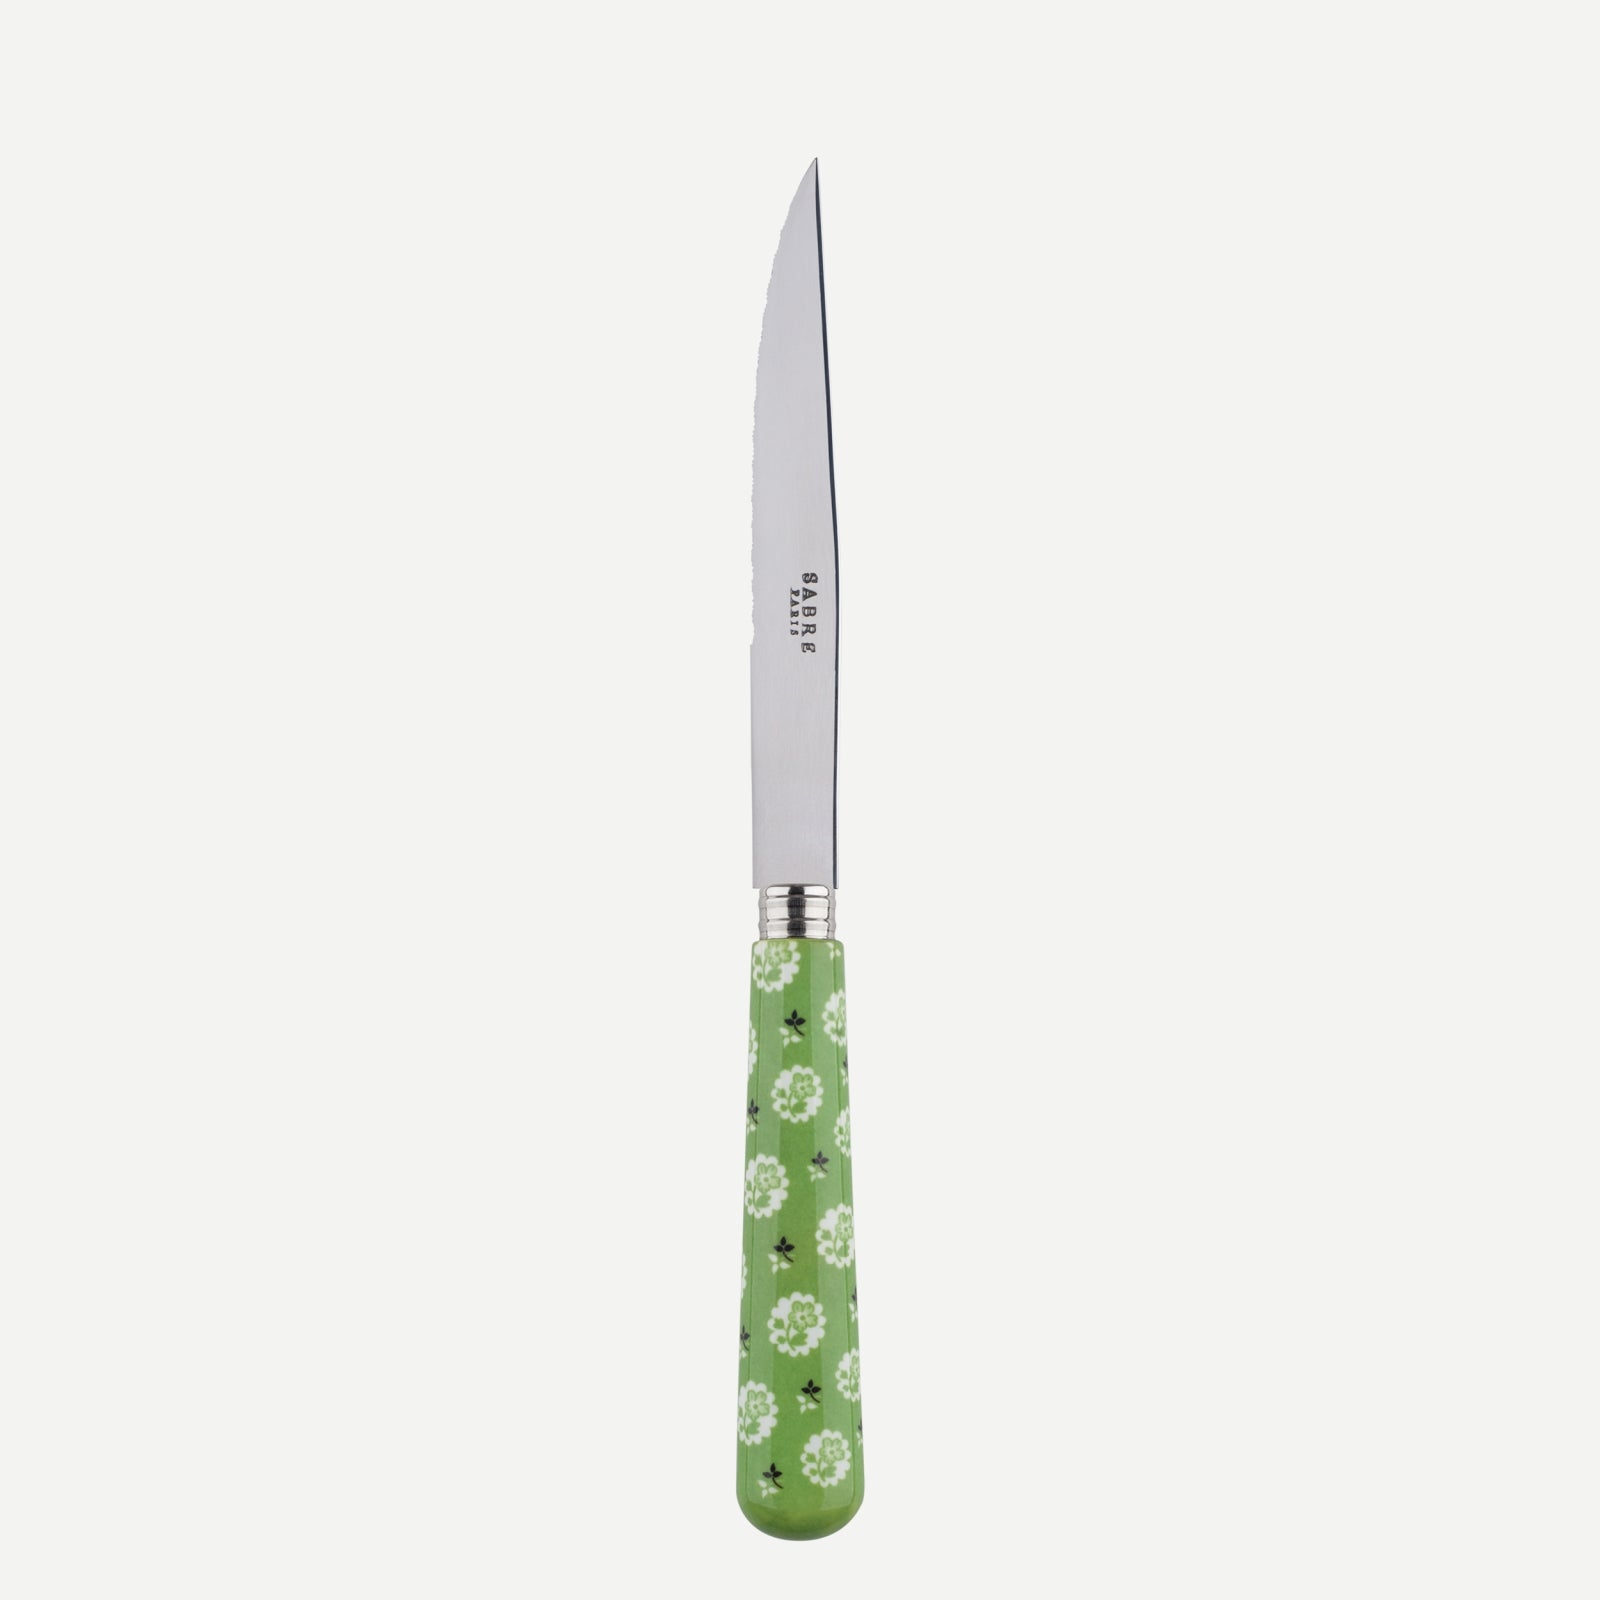 Steack knife - Provencal - Garden green